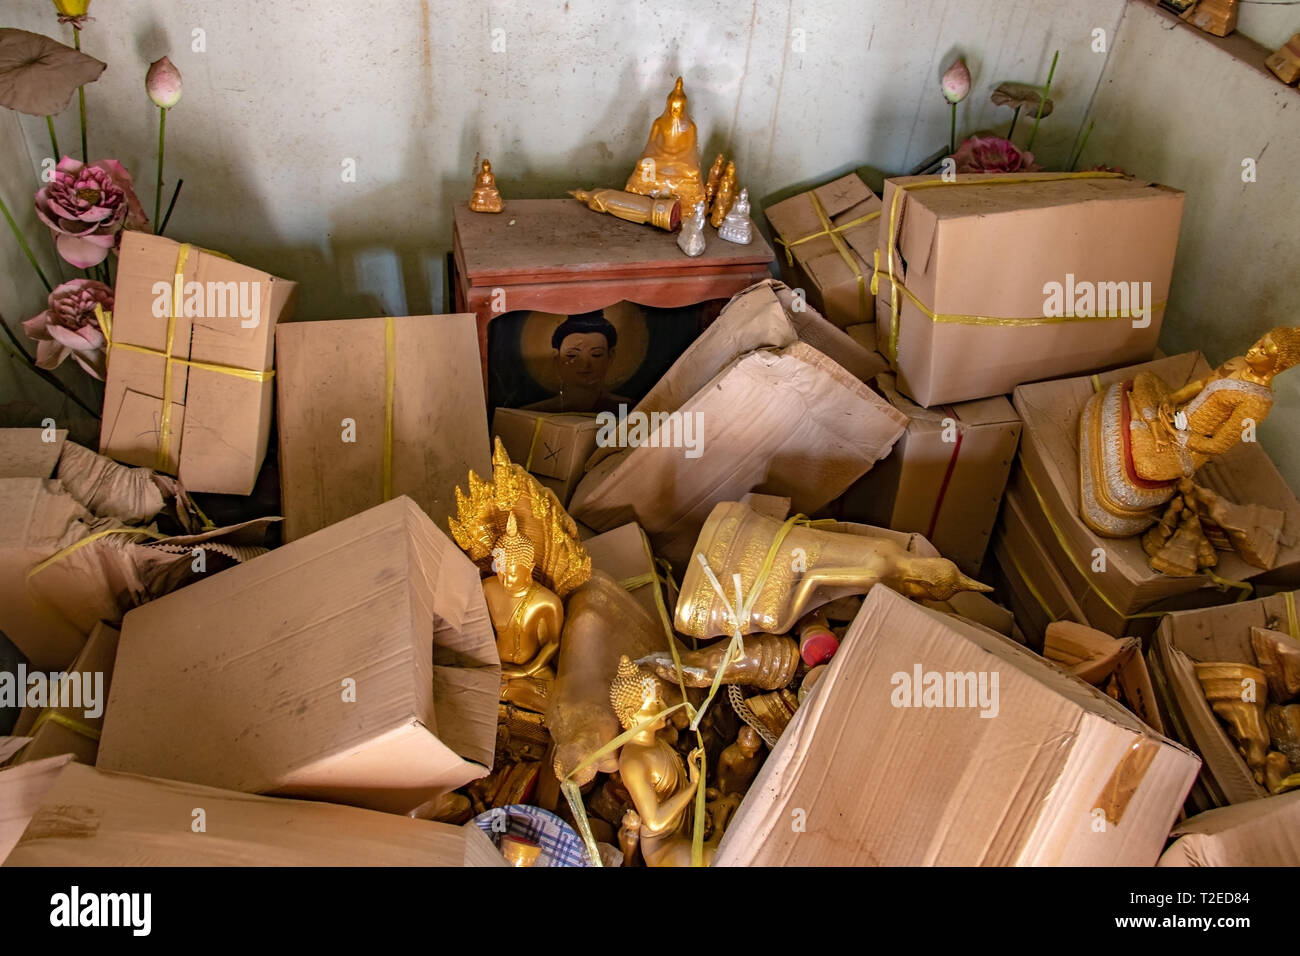 La salle de stockage avec désordre d'une pile de boîtes et d'objets sacrés peper incl.statues de Bouddha dans le temple bouddhiste, la Thaïlande. Banque D'Images